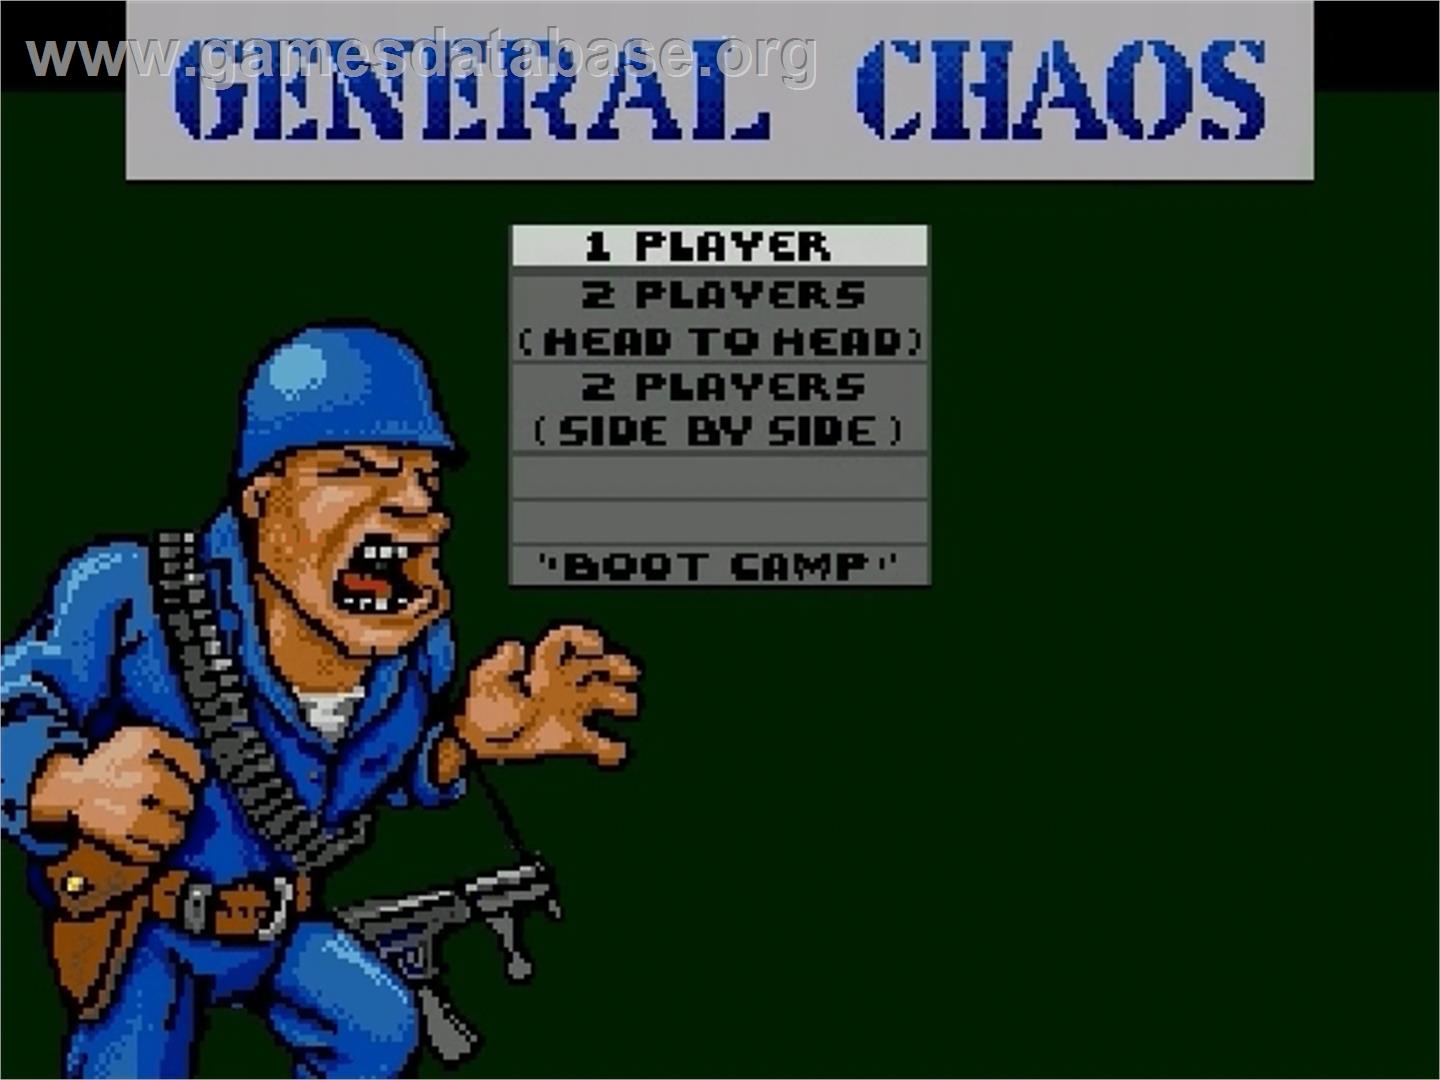 General Chaos - Sega Genesis - Artwork - Title Screen